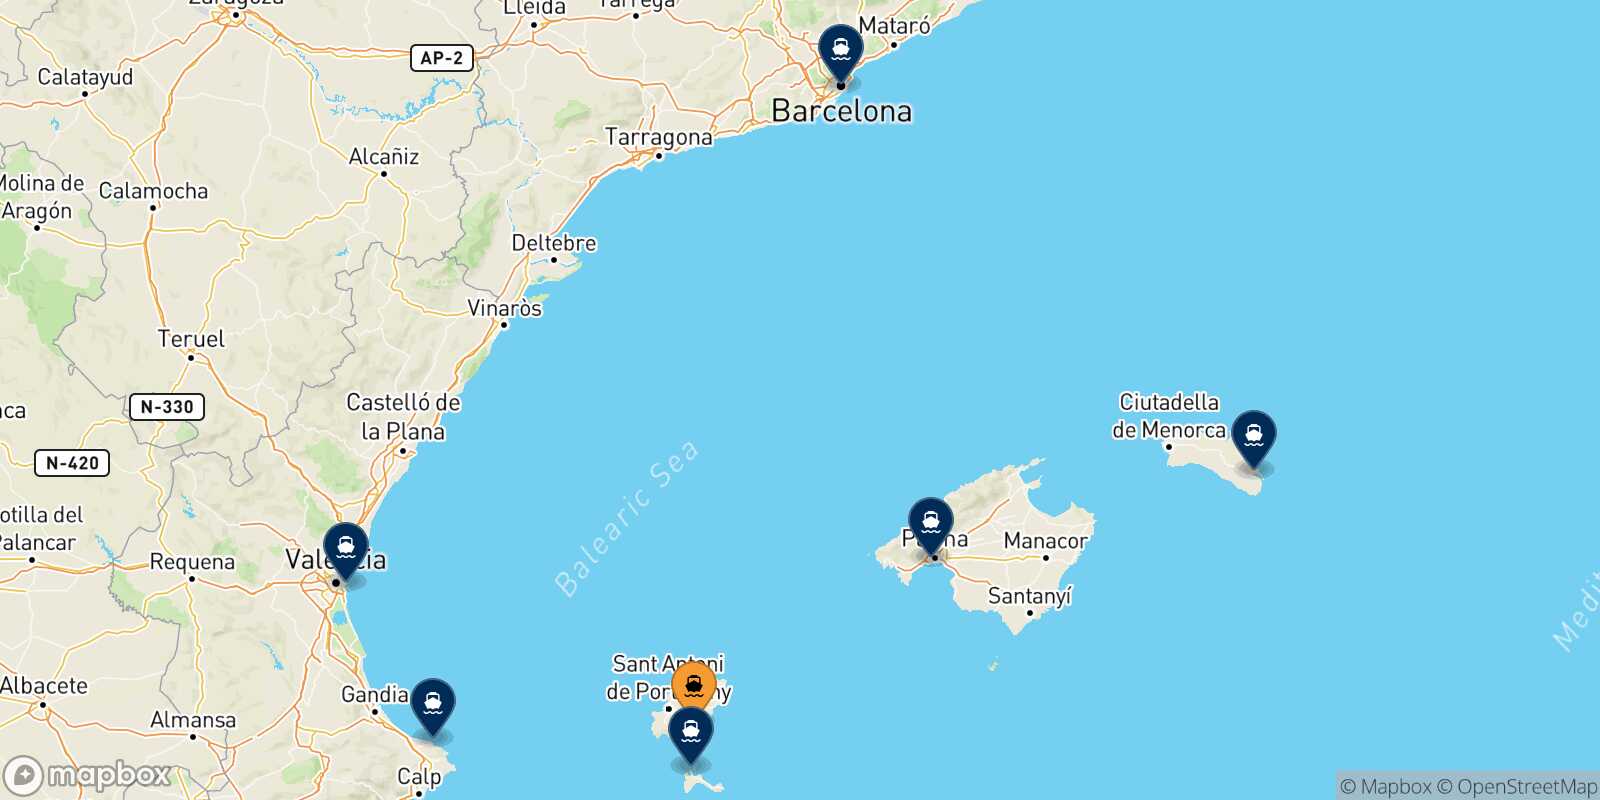 Mappa delle destinazioni raggiungibili da Ibiza